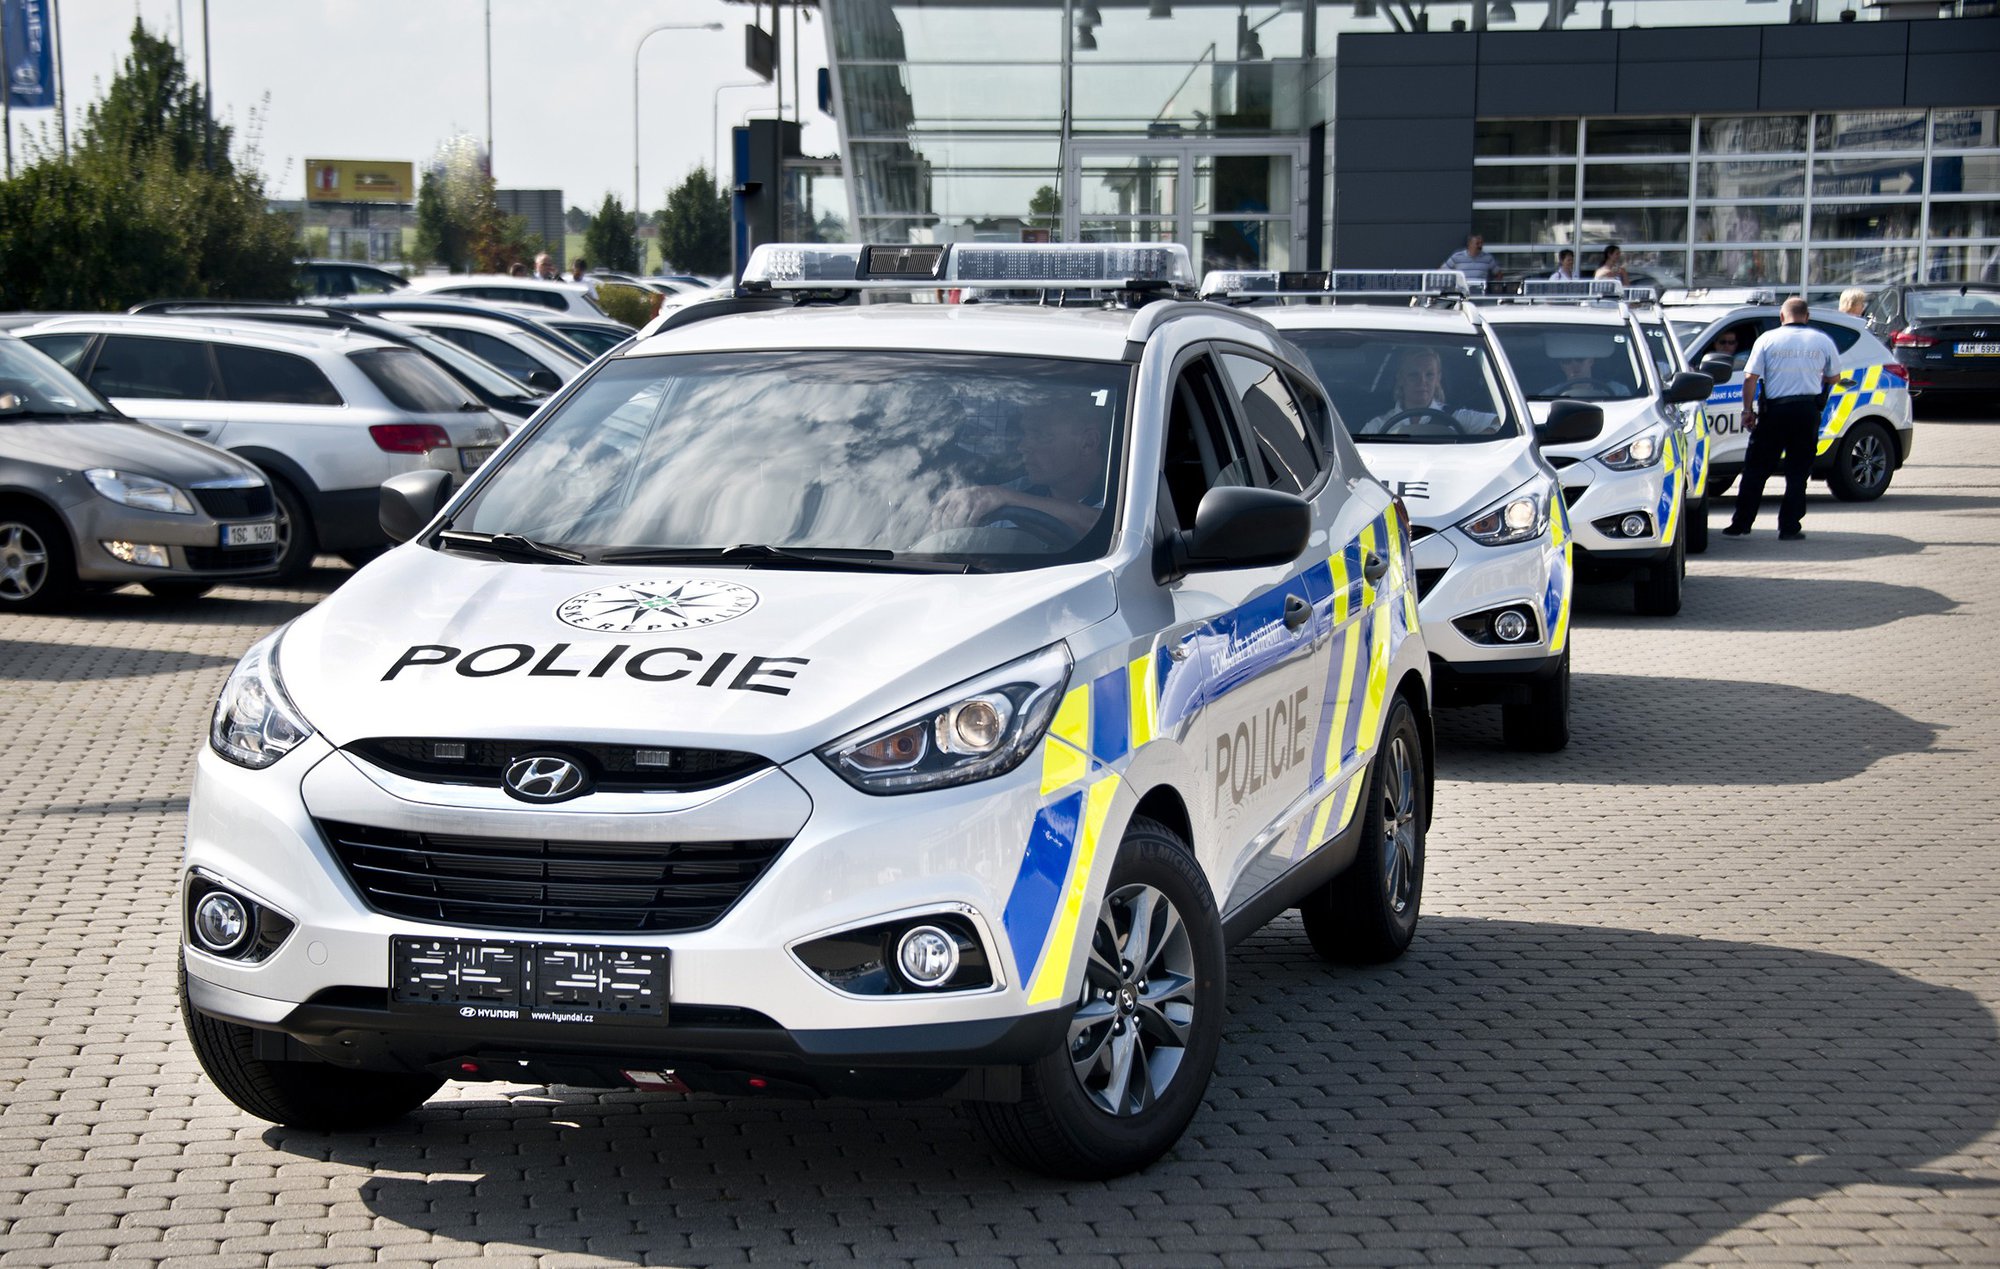 Hyundai ix35 v policejní úpravě s motorem 2,0 GDI